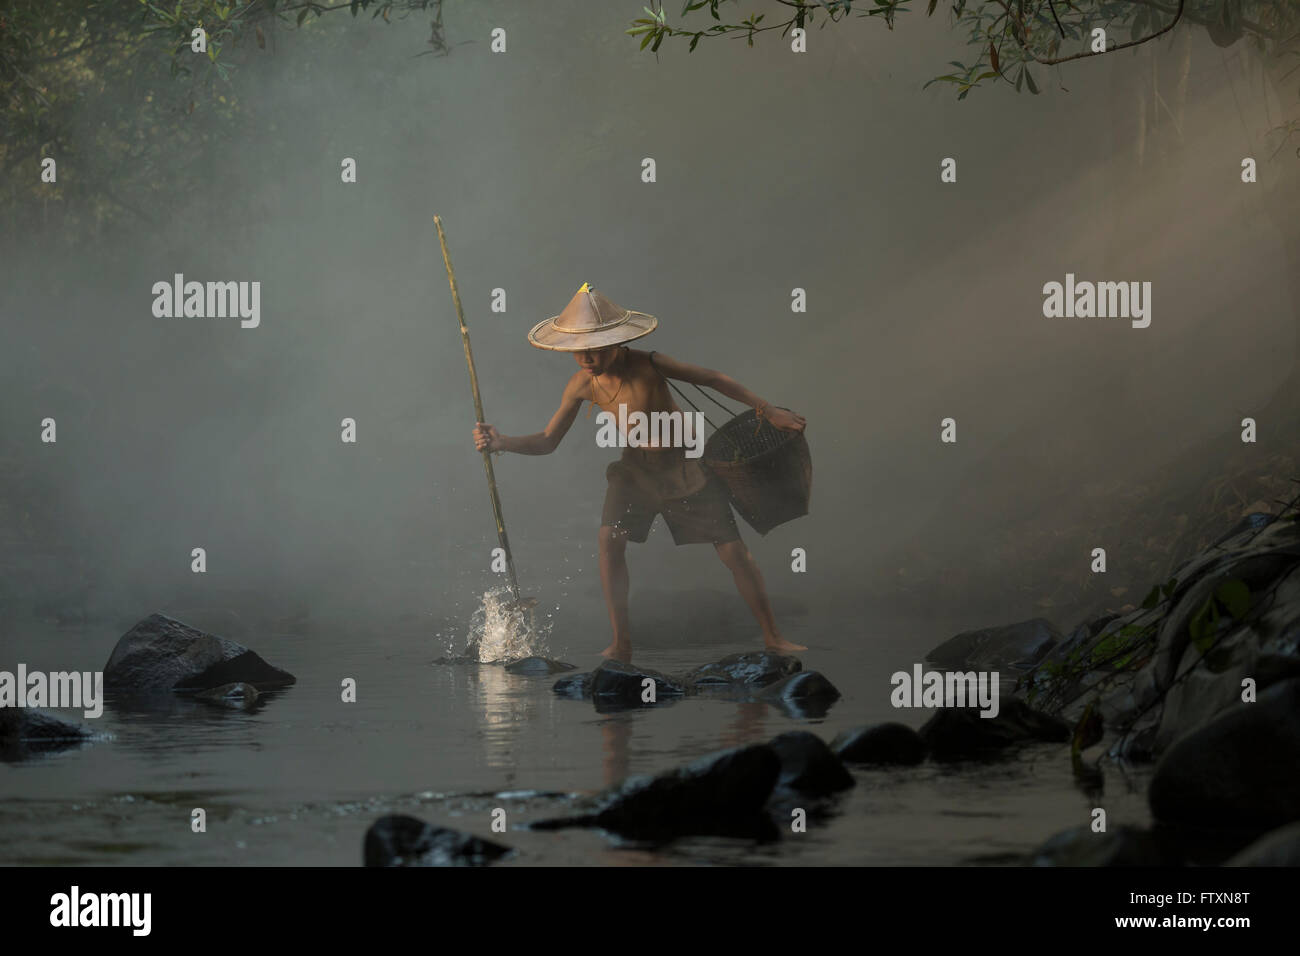 Chico pesca con una lanza, Nong Khai, Tailandia Foto de stock